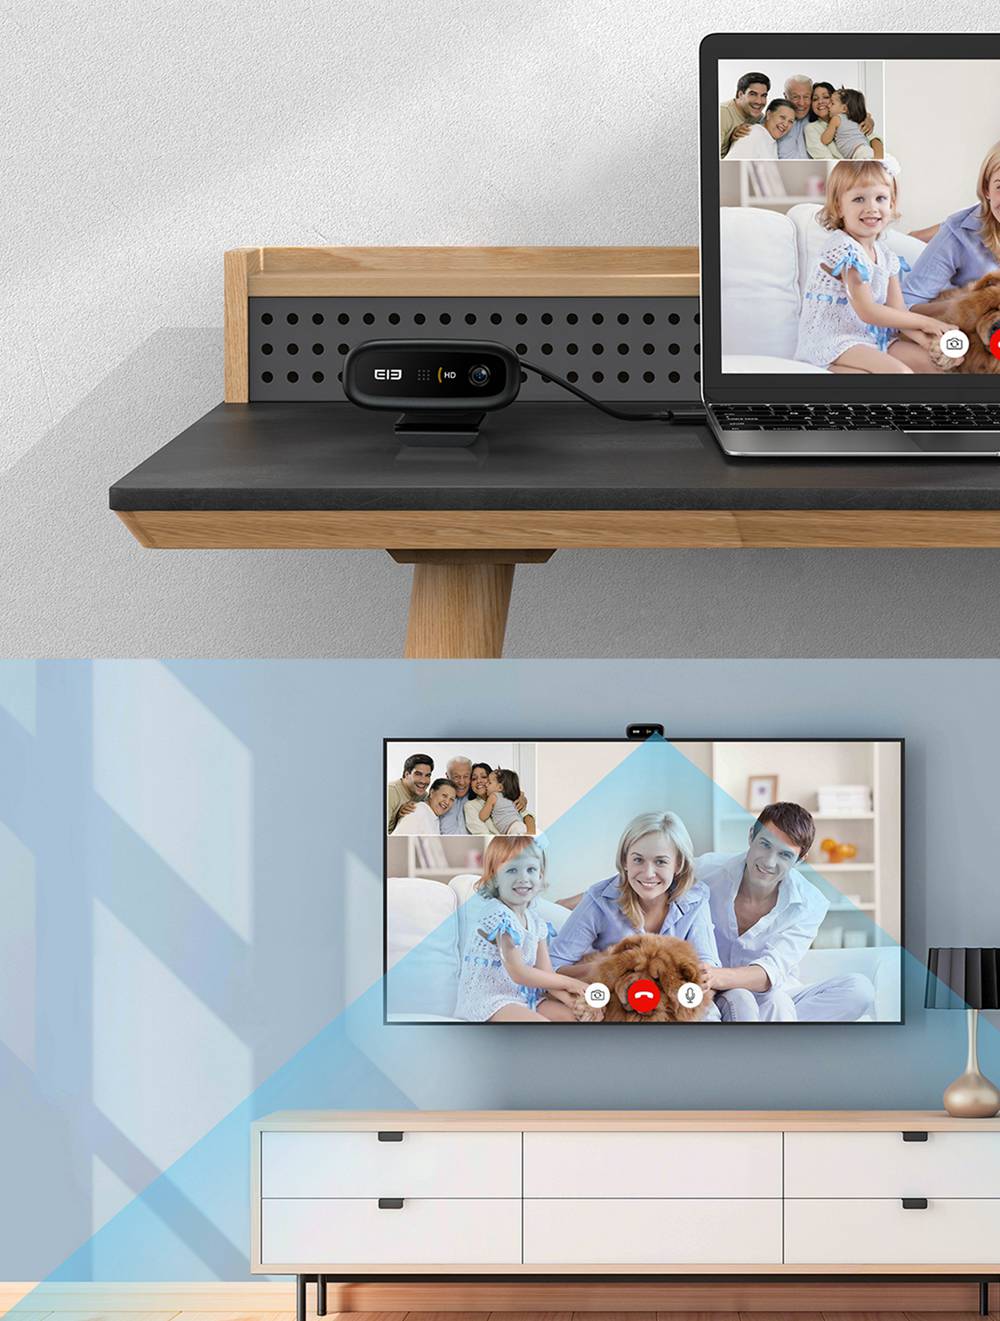 Elephone Ecam X 1080P HD Webcam 5.0 MegaPixels Auto Focus Built-in Microphone For PC Laptop - Black